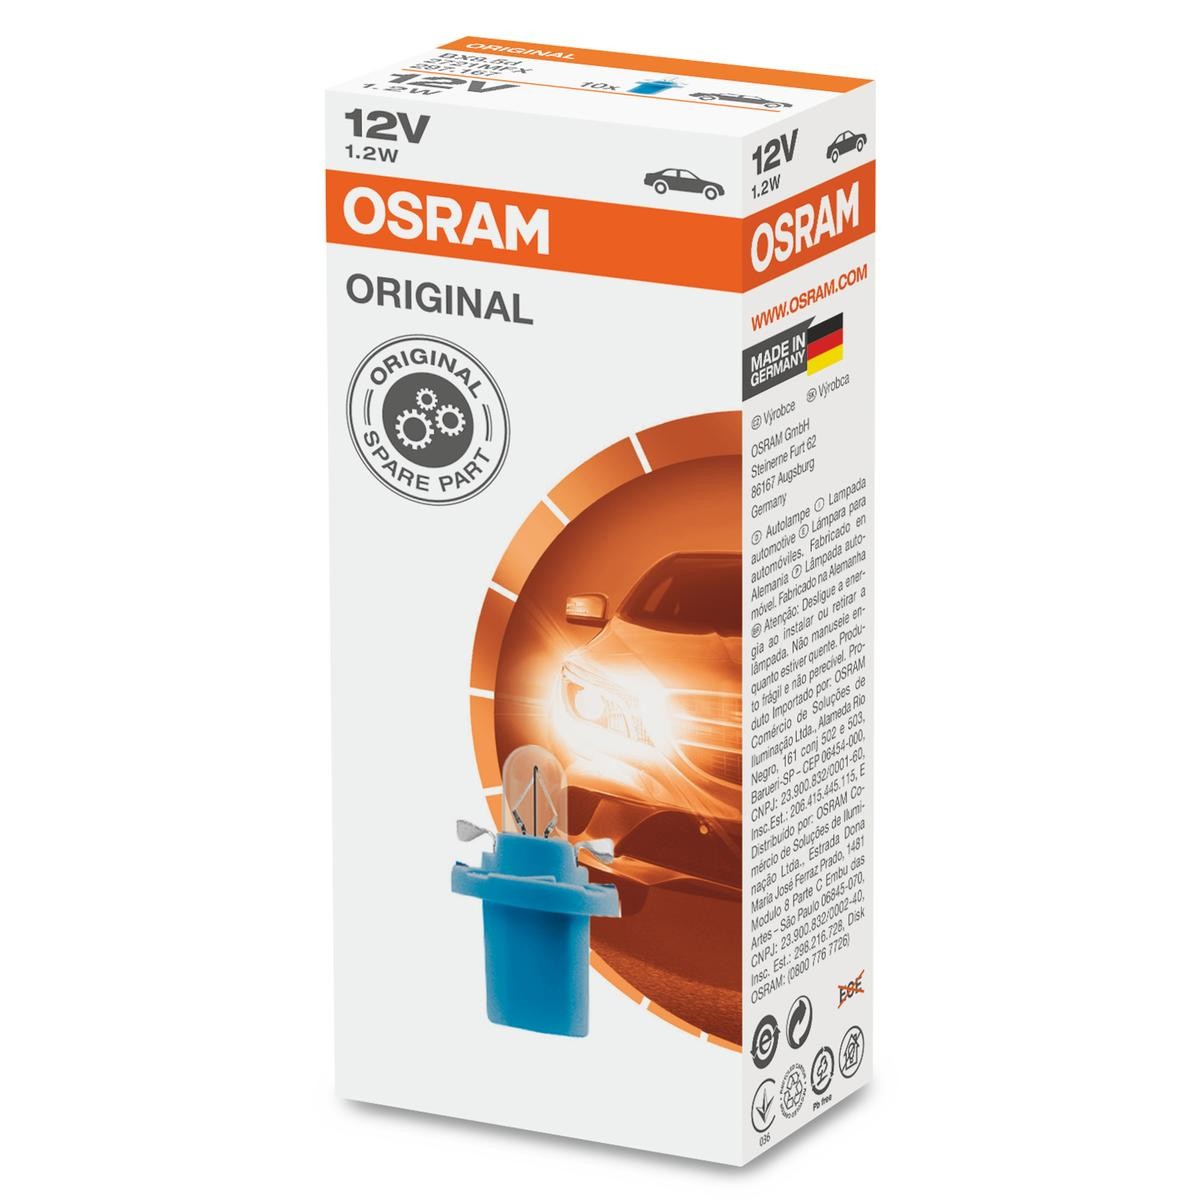 OSRAM 2721MFX OSRAM voor ERF M-Serie aan voordelige voorwaarden